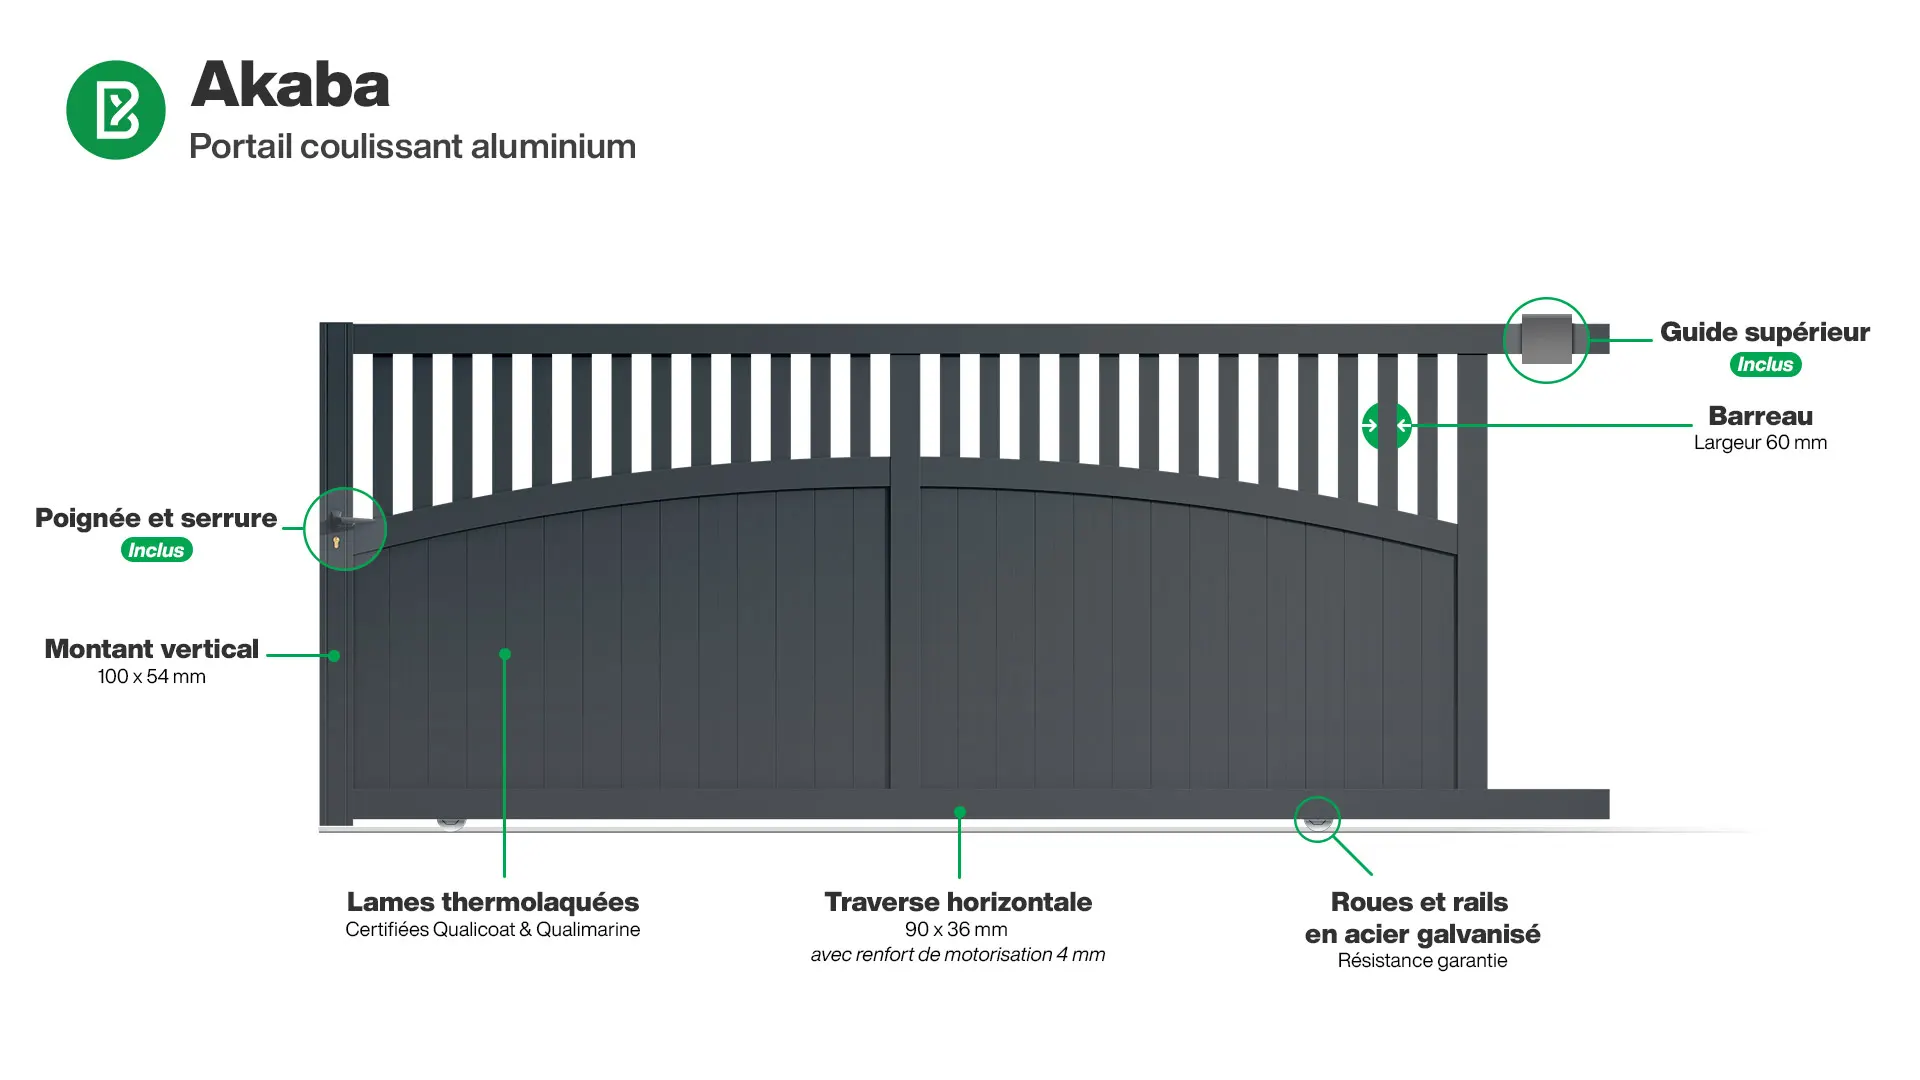 Portail : Infographie d'un portail coulissant aluminium modèle AKABA